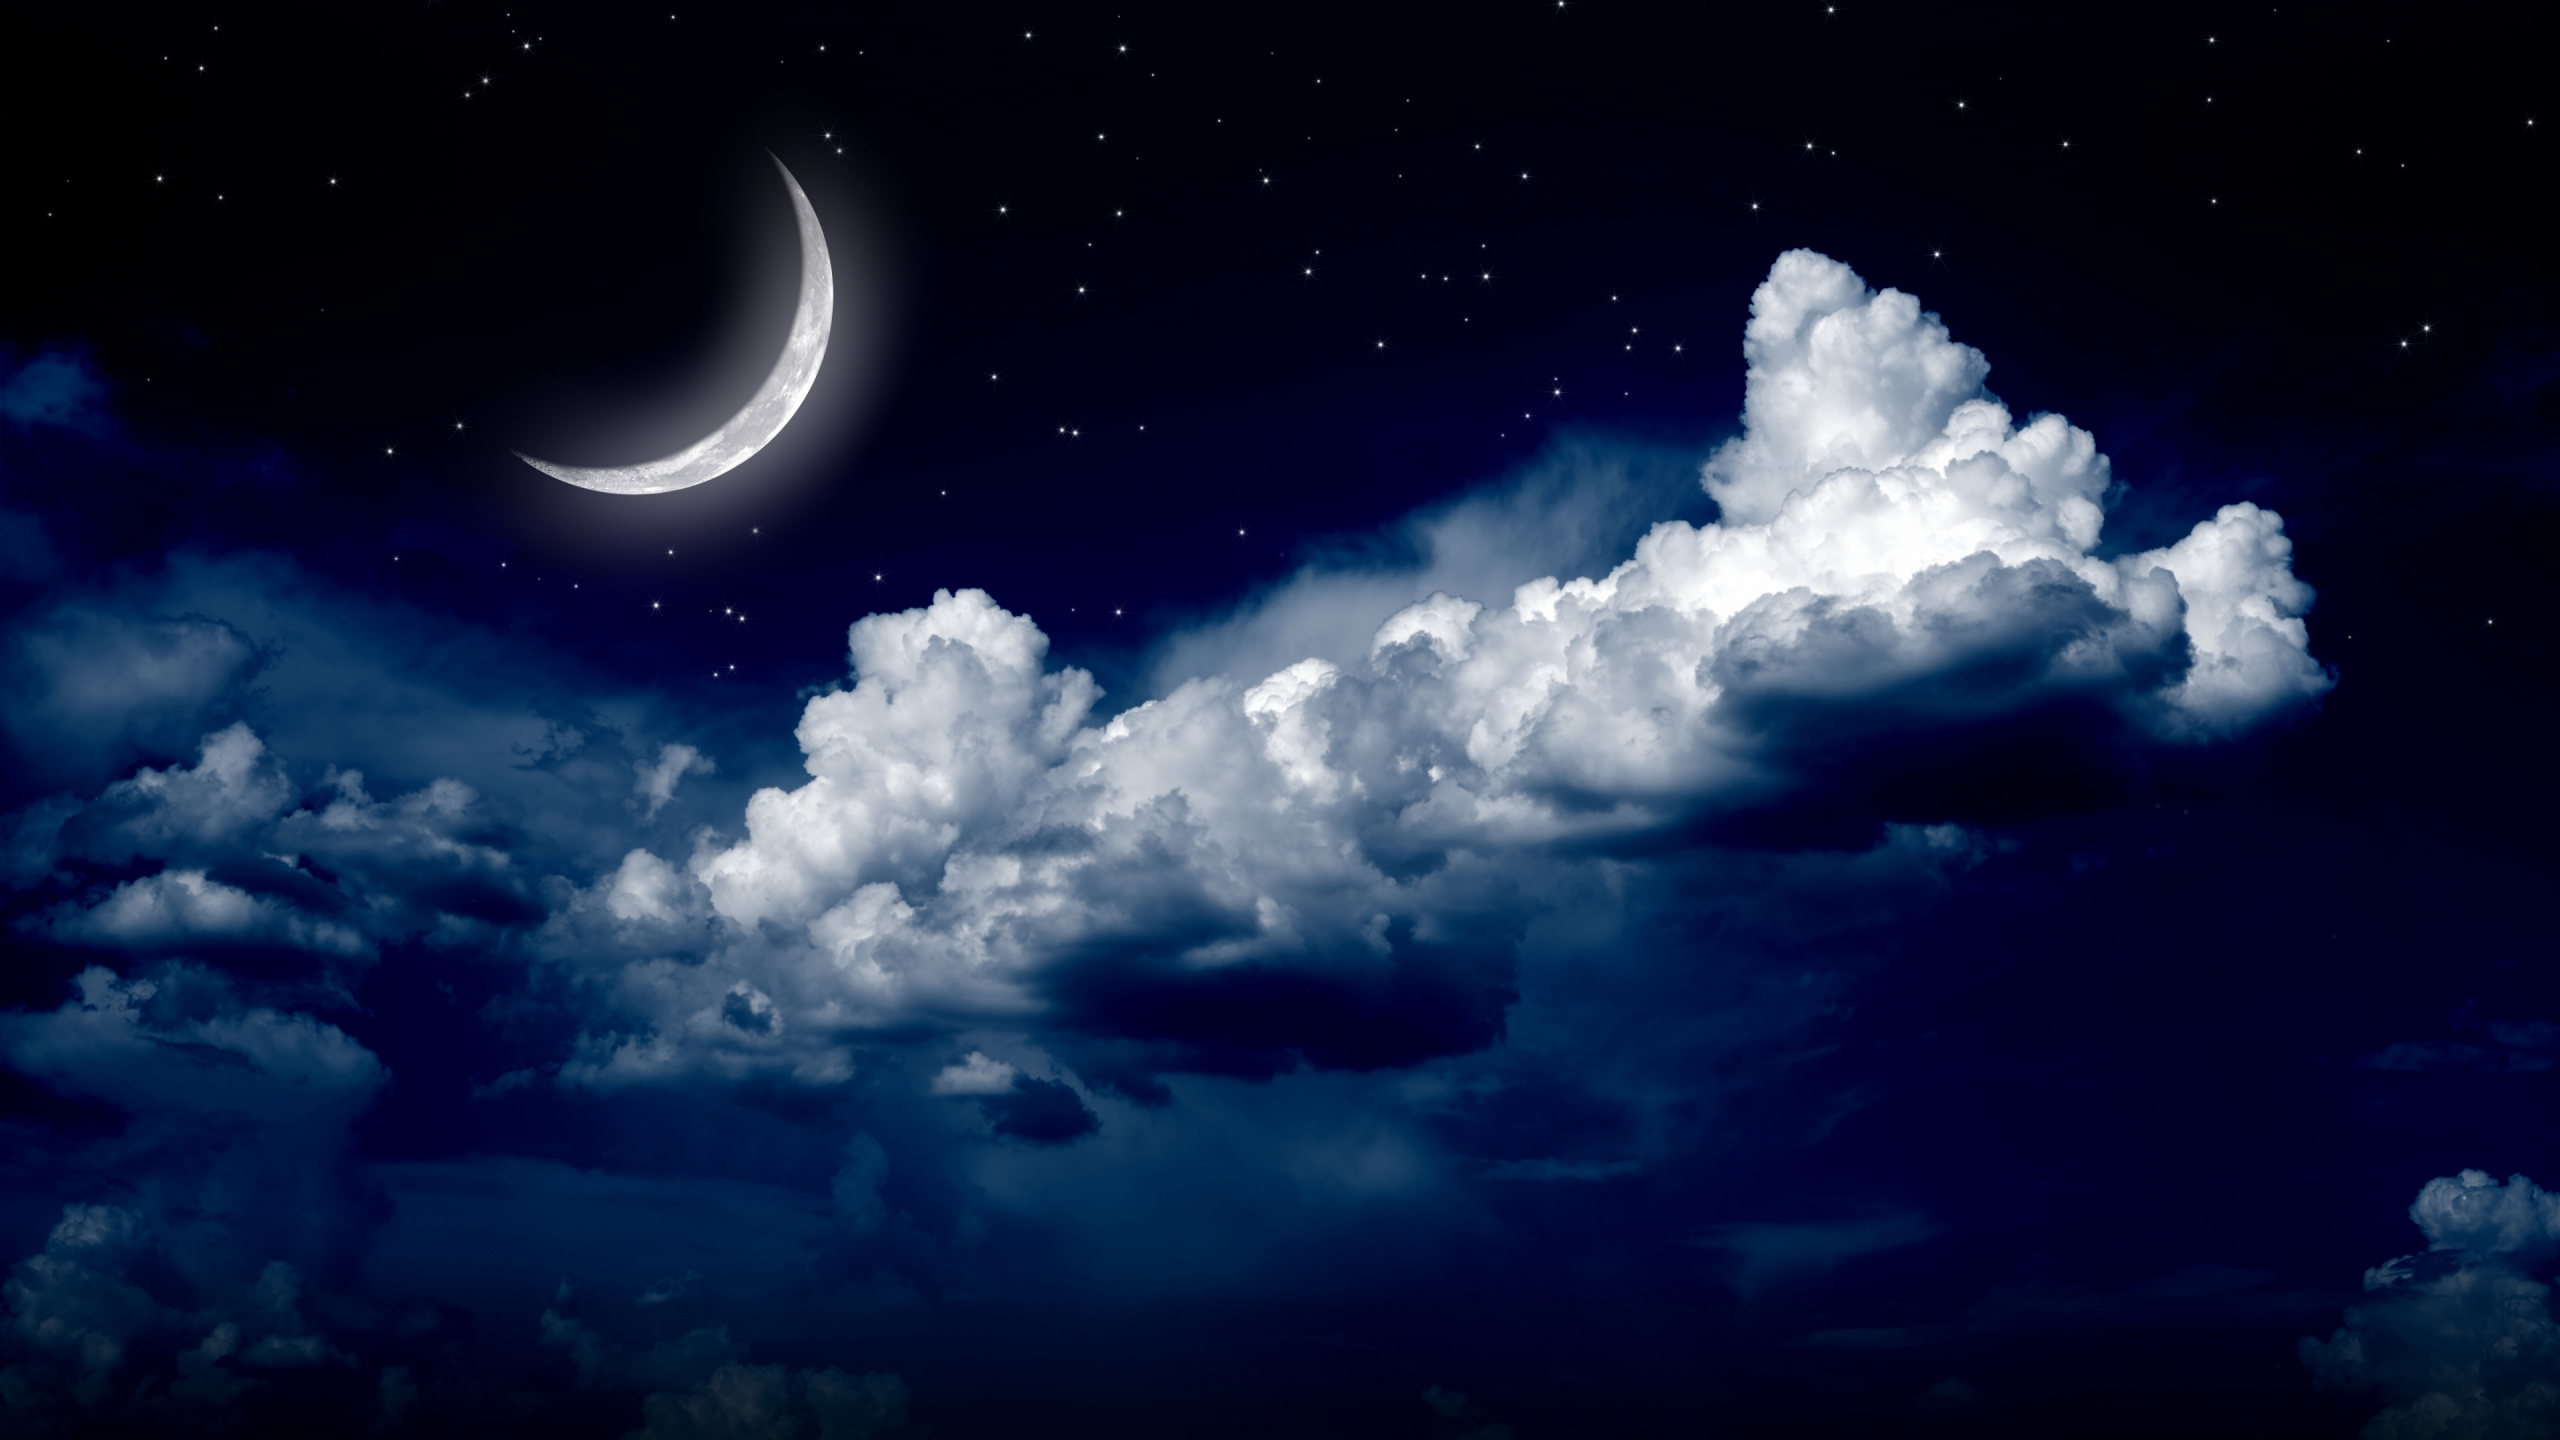 月光, 月亮, 夜晚的天空, 性质, 积云 壁纸 2560x1440 允许